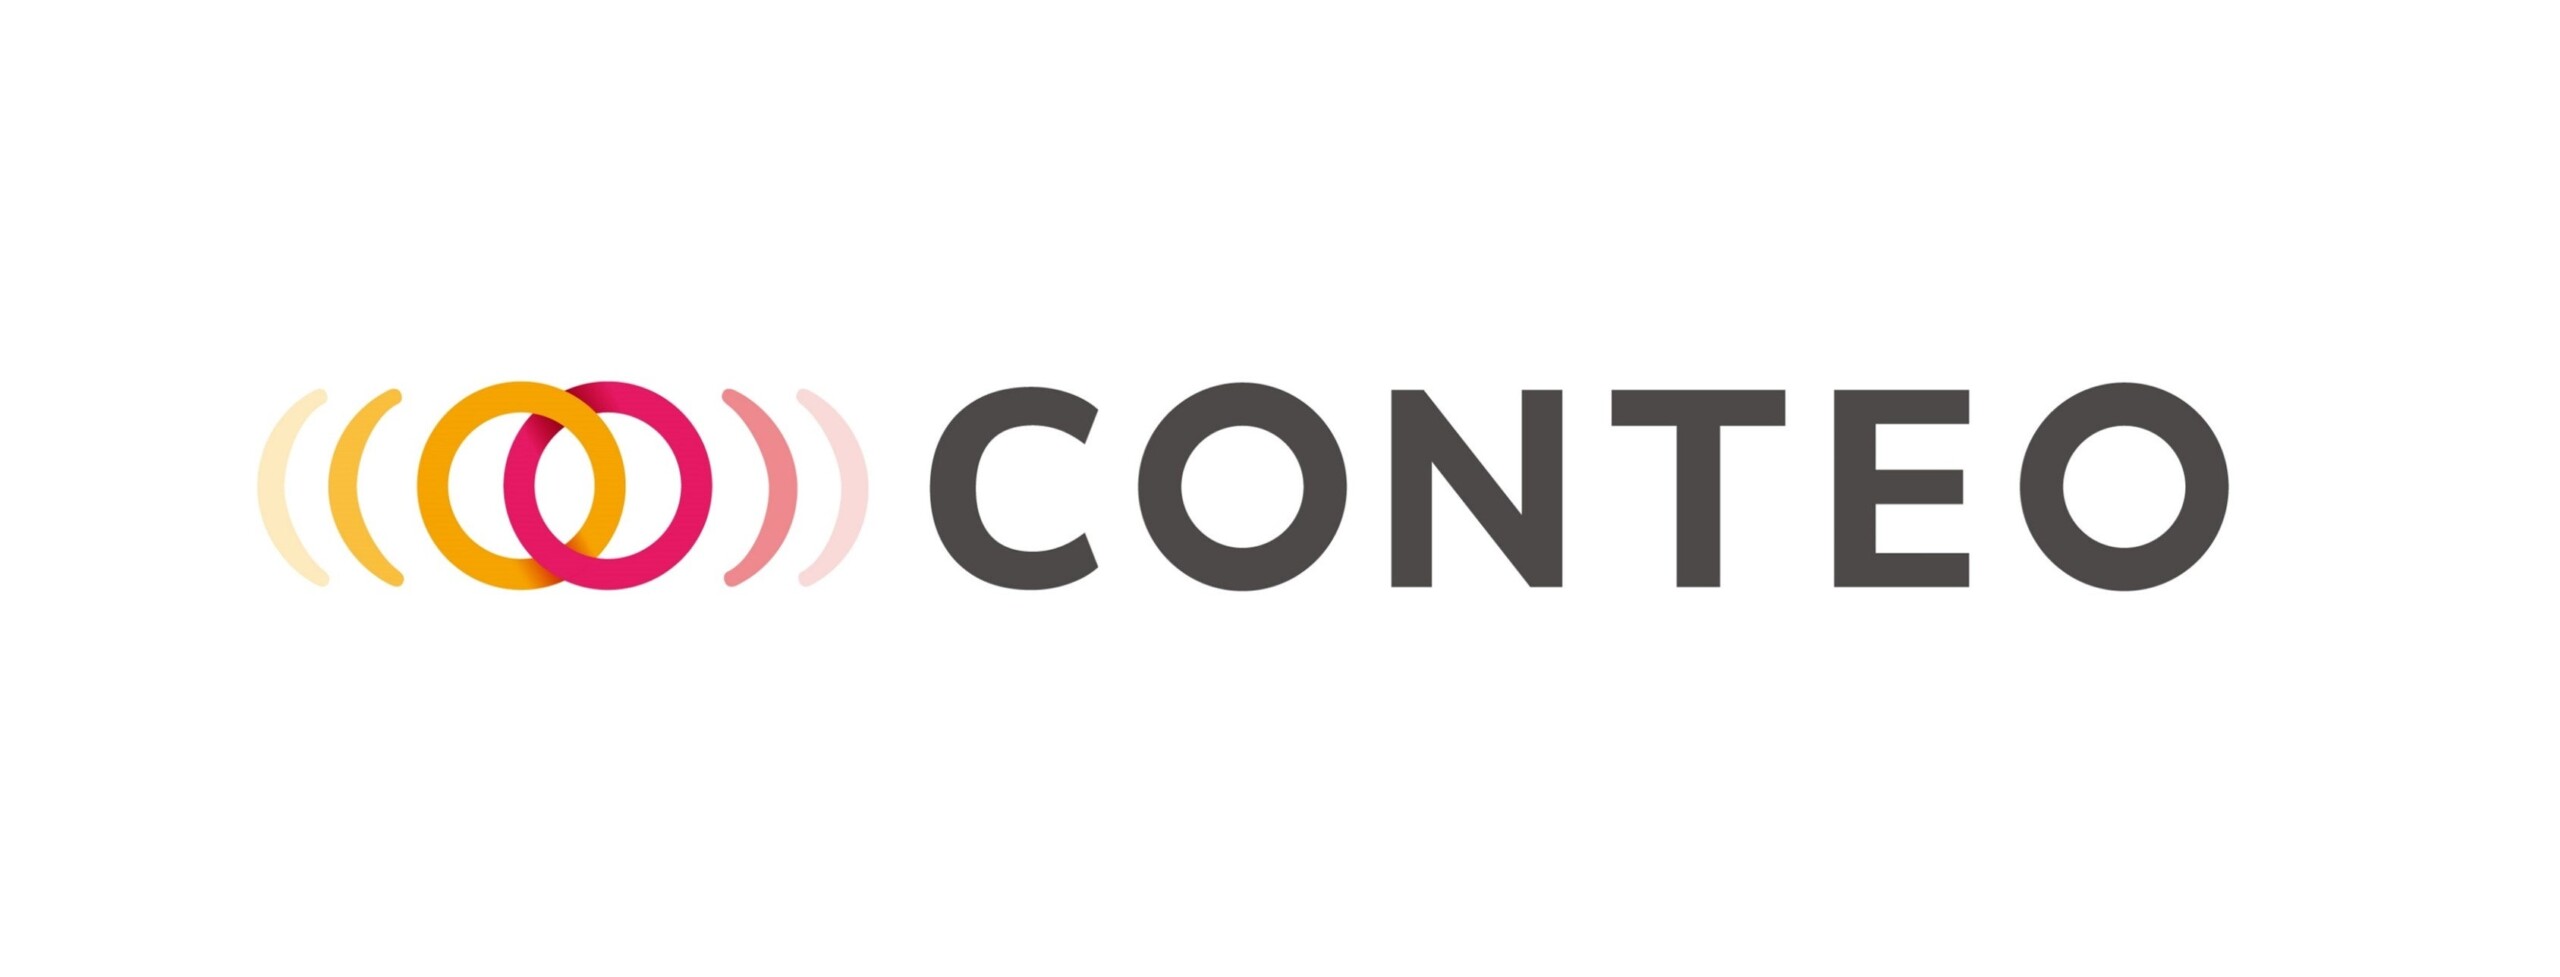 出版業・コンテンツビジネス業管理システム『CONTEO』がクラウドサービスセキュリティ認証を取得